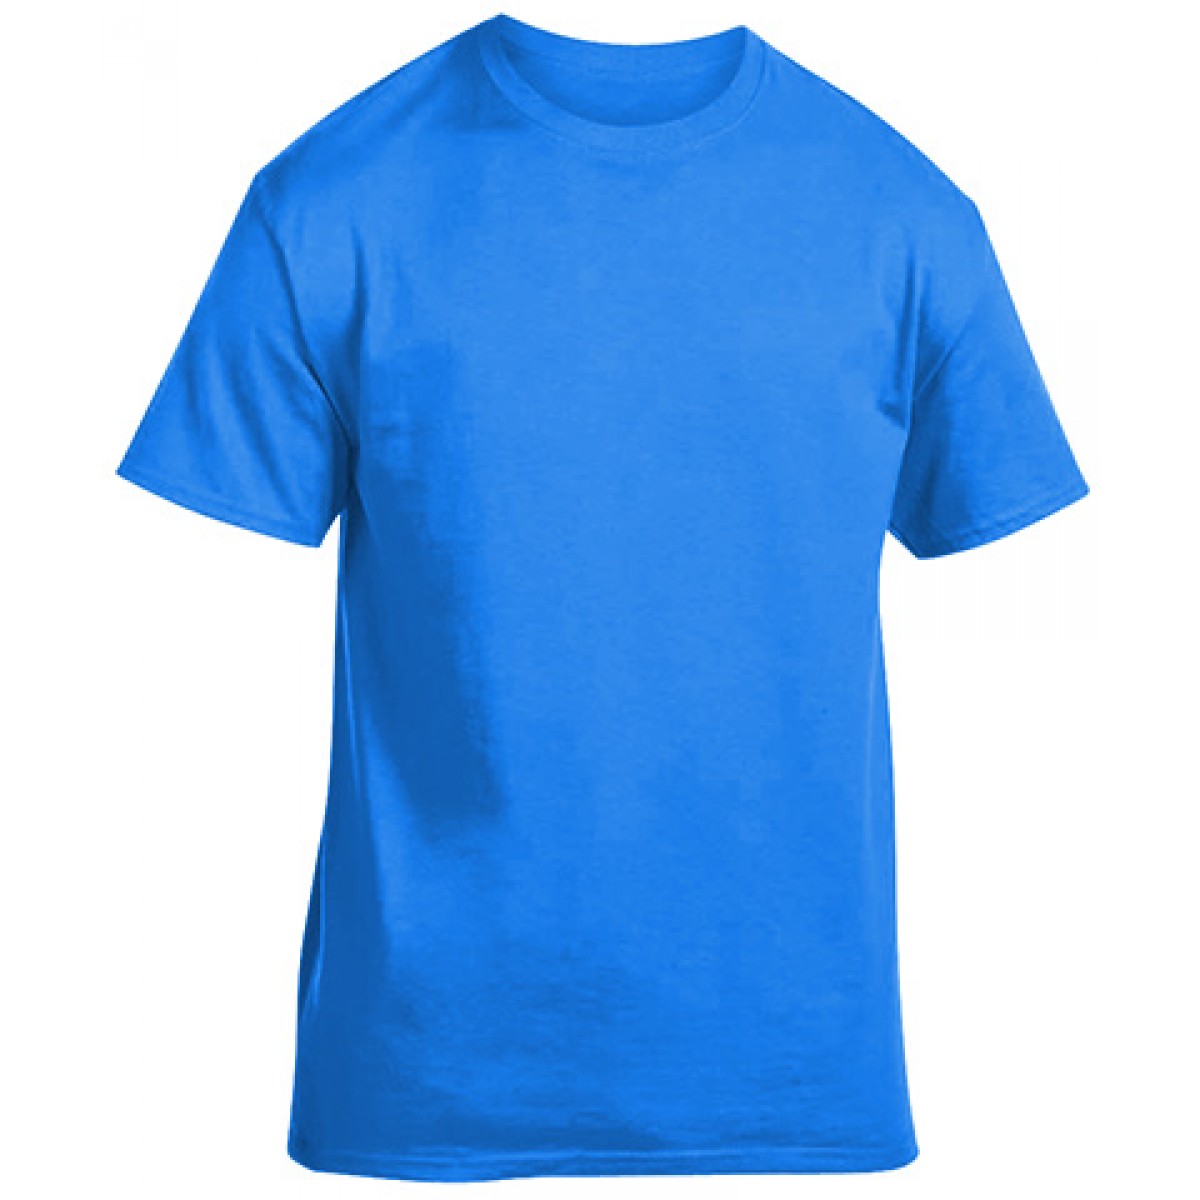 Soft 100% Cotton T-Shirt-Neon Blue-M